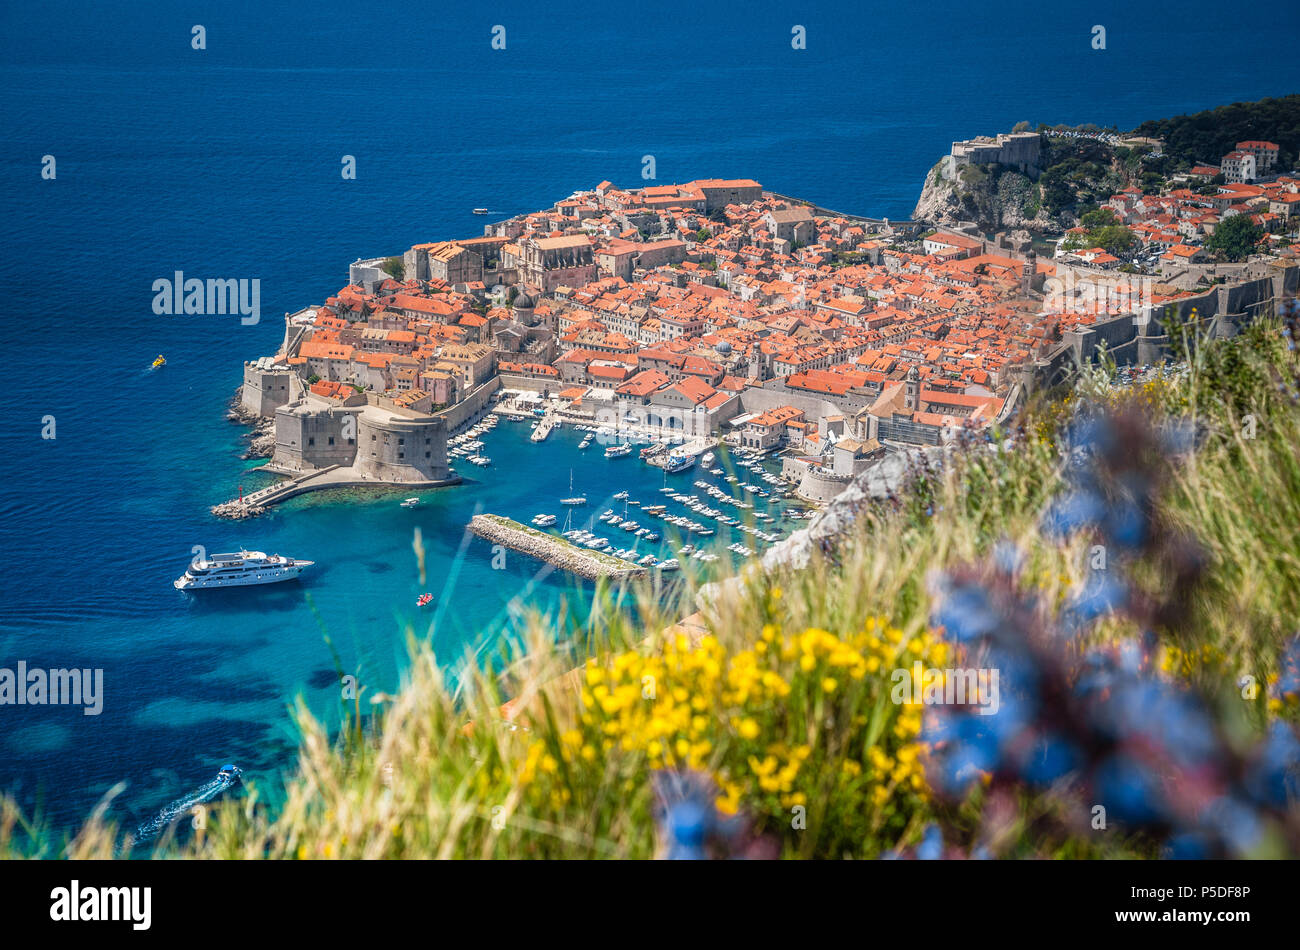 Vue panoramique vue aérienne de la ville historique de Dubrovnik, l'une des plus célèbres destinations touristiques de la Méditerranée, de Srd mountain Banque D'Images